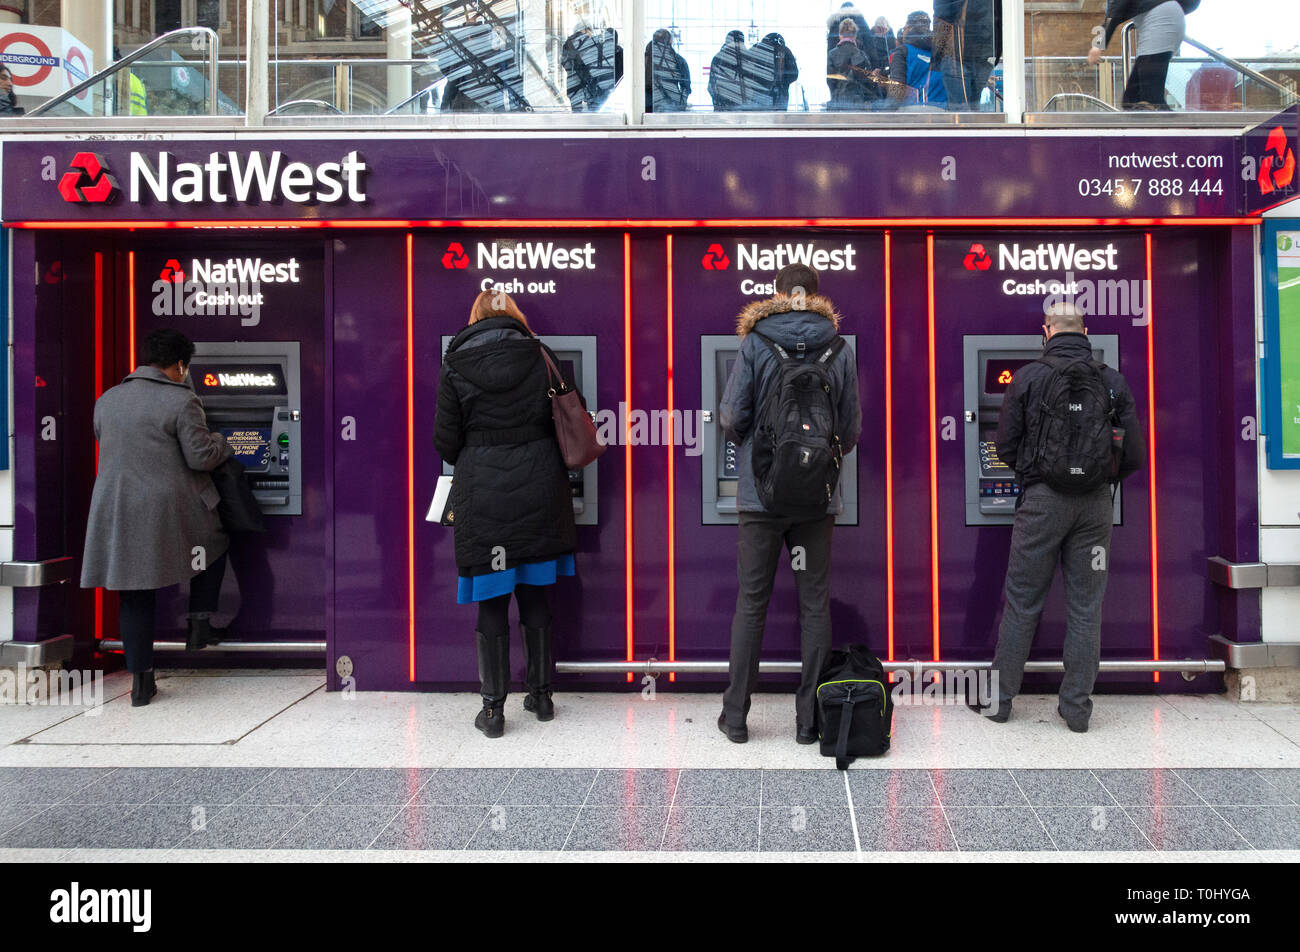 Les gens à l'aide de distributeurs automatiques de billets situé dans une rangée de Nat West Bank ATM's dans le hall principal de la gare de Liverpool Street, Londres Banque D'Images